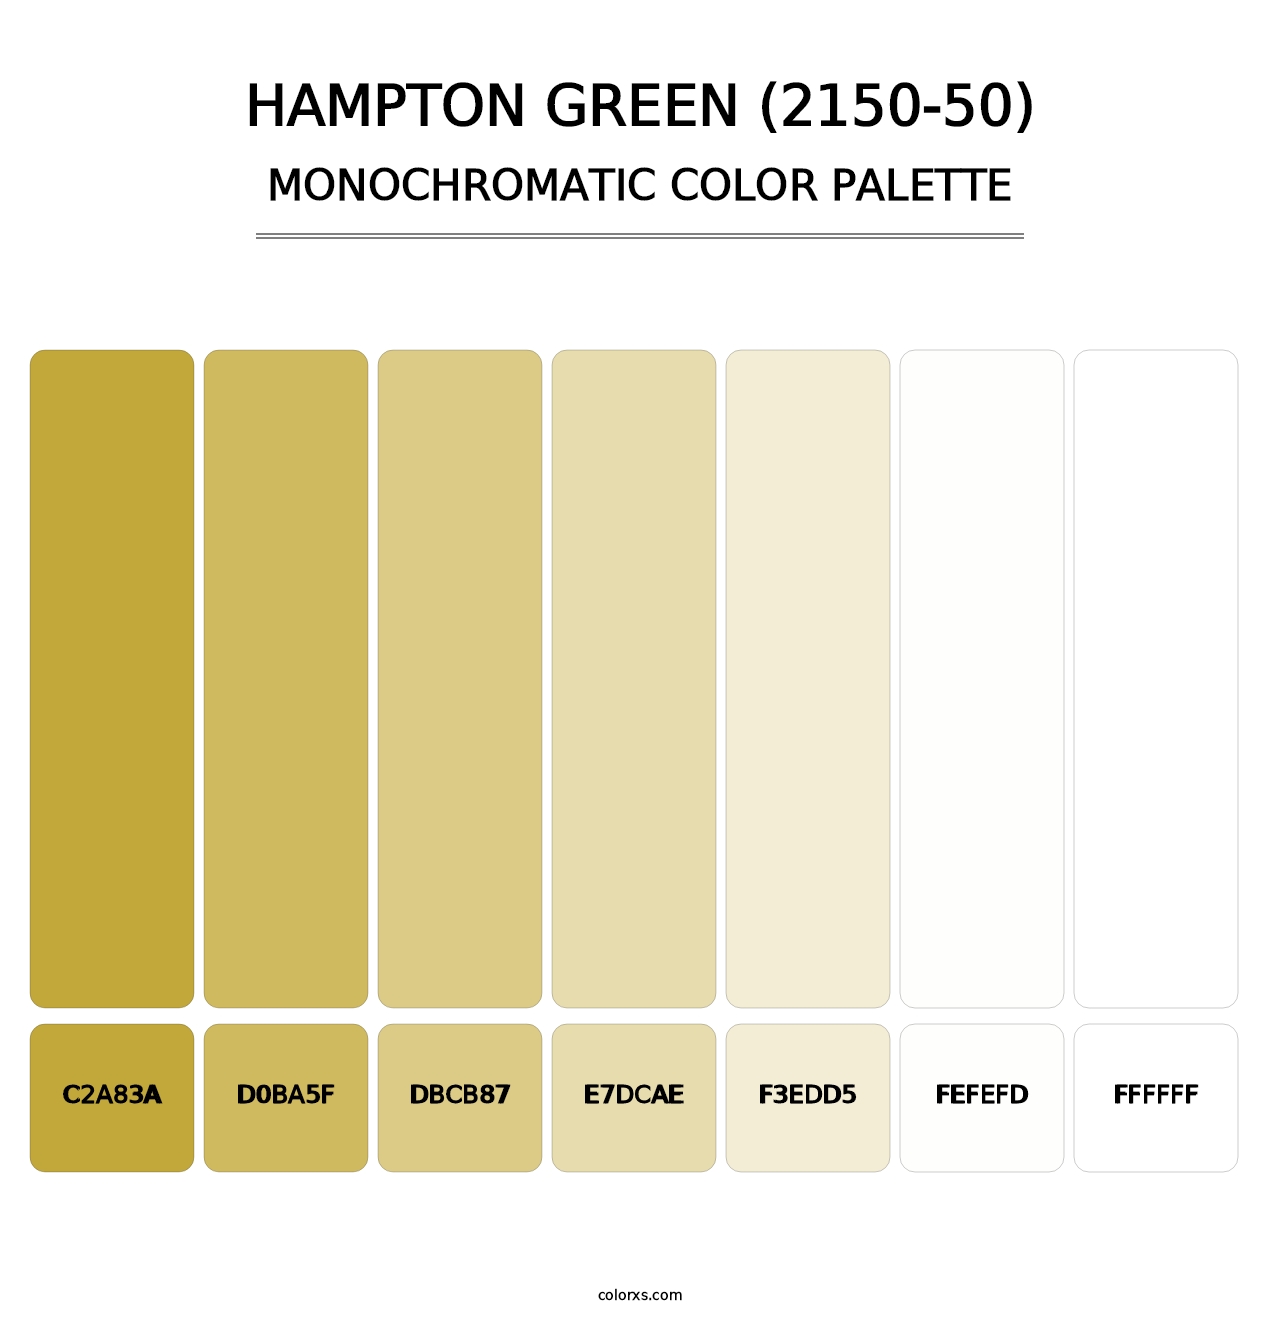 Hampton Green (2150-50) - Monochromatic Color Palette